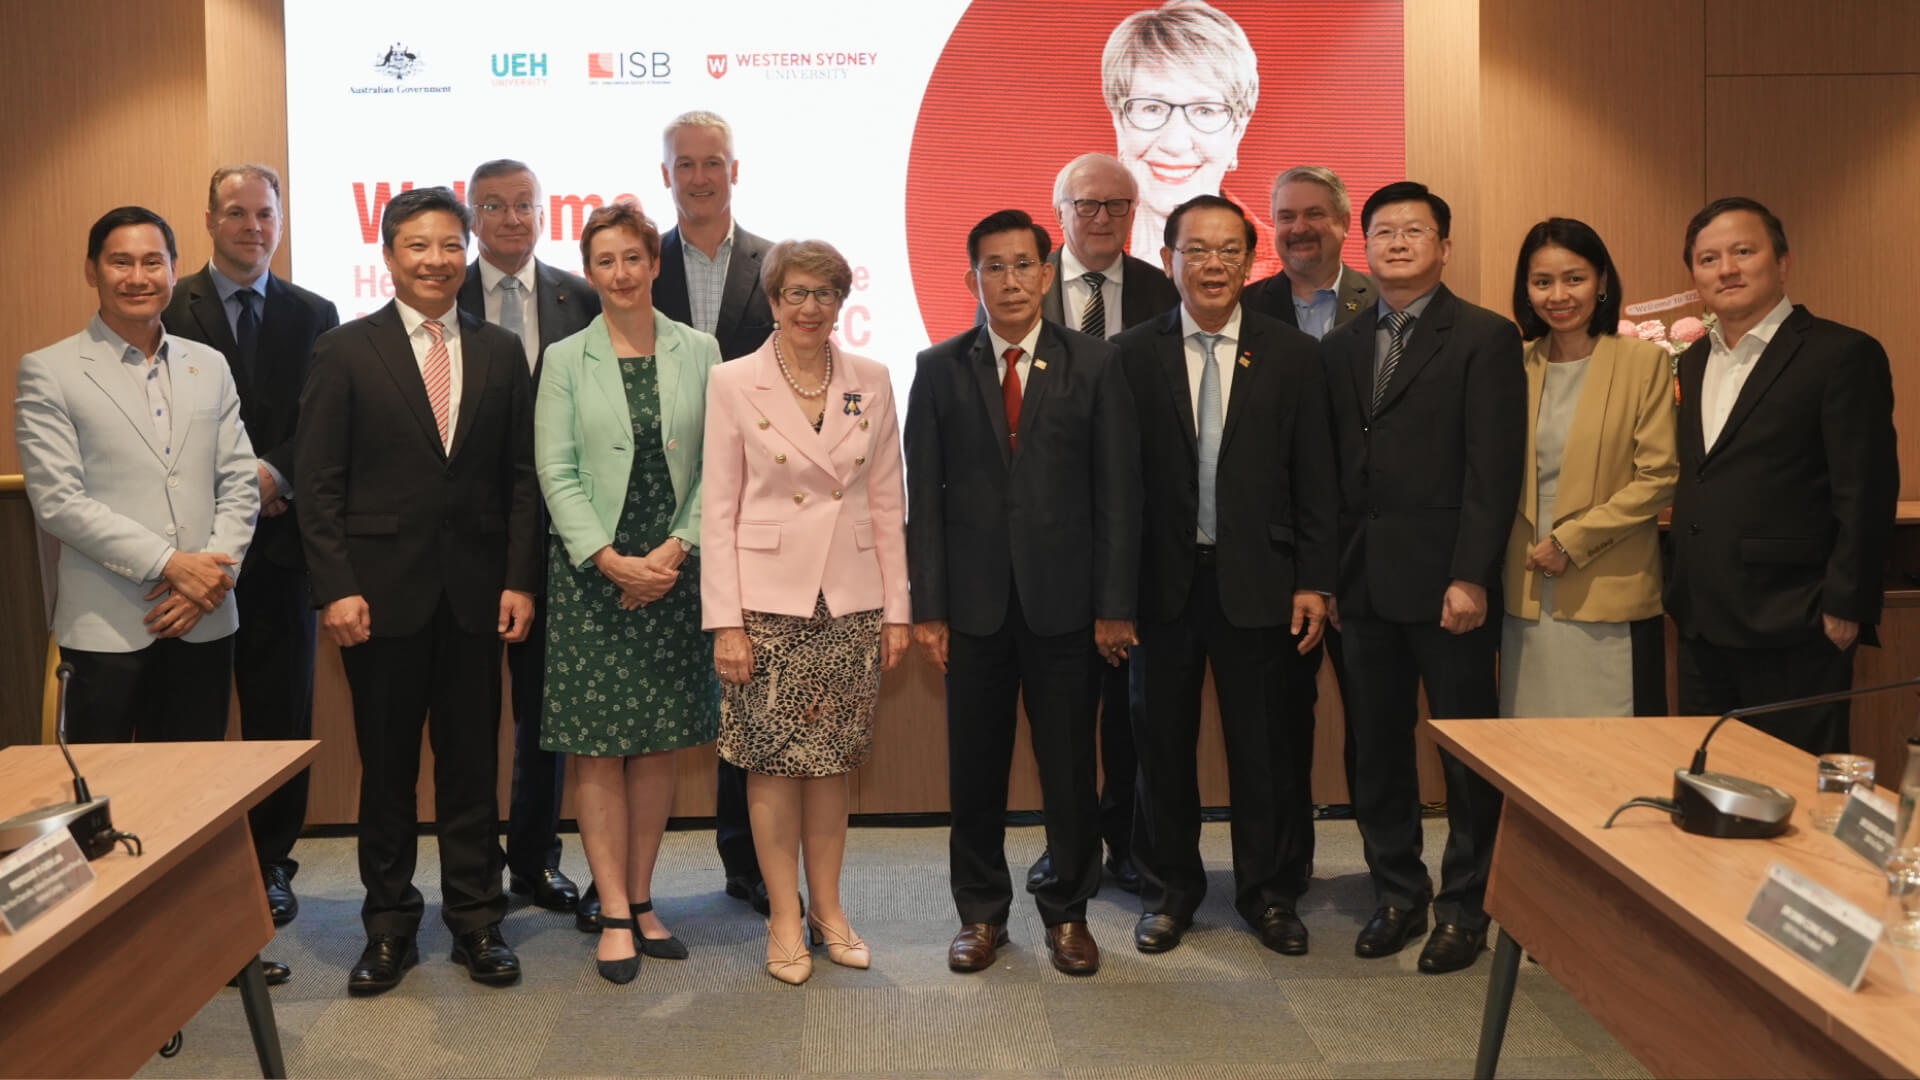 Bà Margaret Beazley, Thống đốc bang New South Wales đã đồng hành cùng các đại diện từ Đại học Western Sydney trong chuyến viếng thăm Đại học Kinh tế TP. Hồ Chí Minh